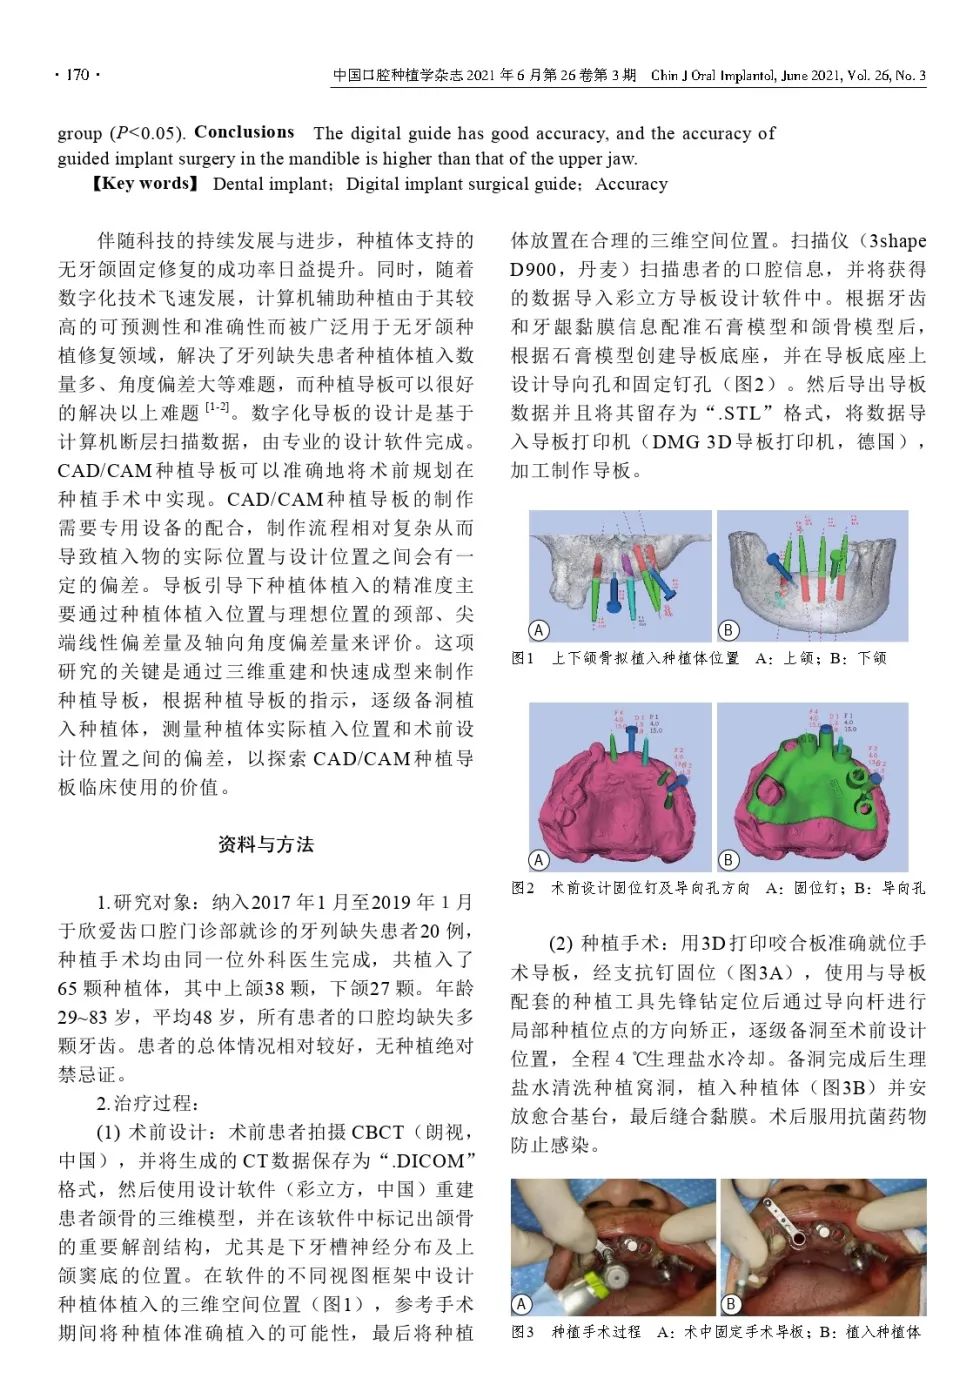 祝贺爱齿口腔：刘珊医生学术论文被口腔权威杂志收录刊登